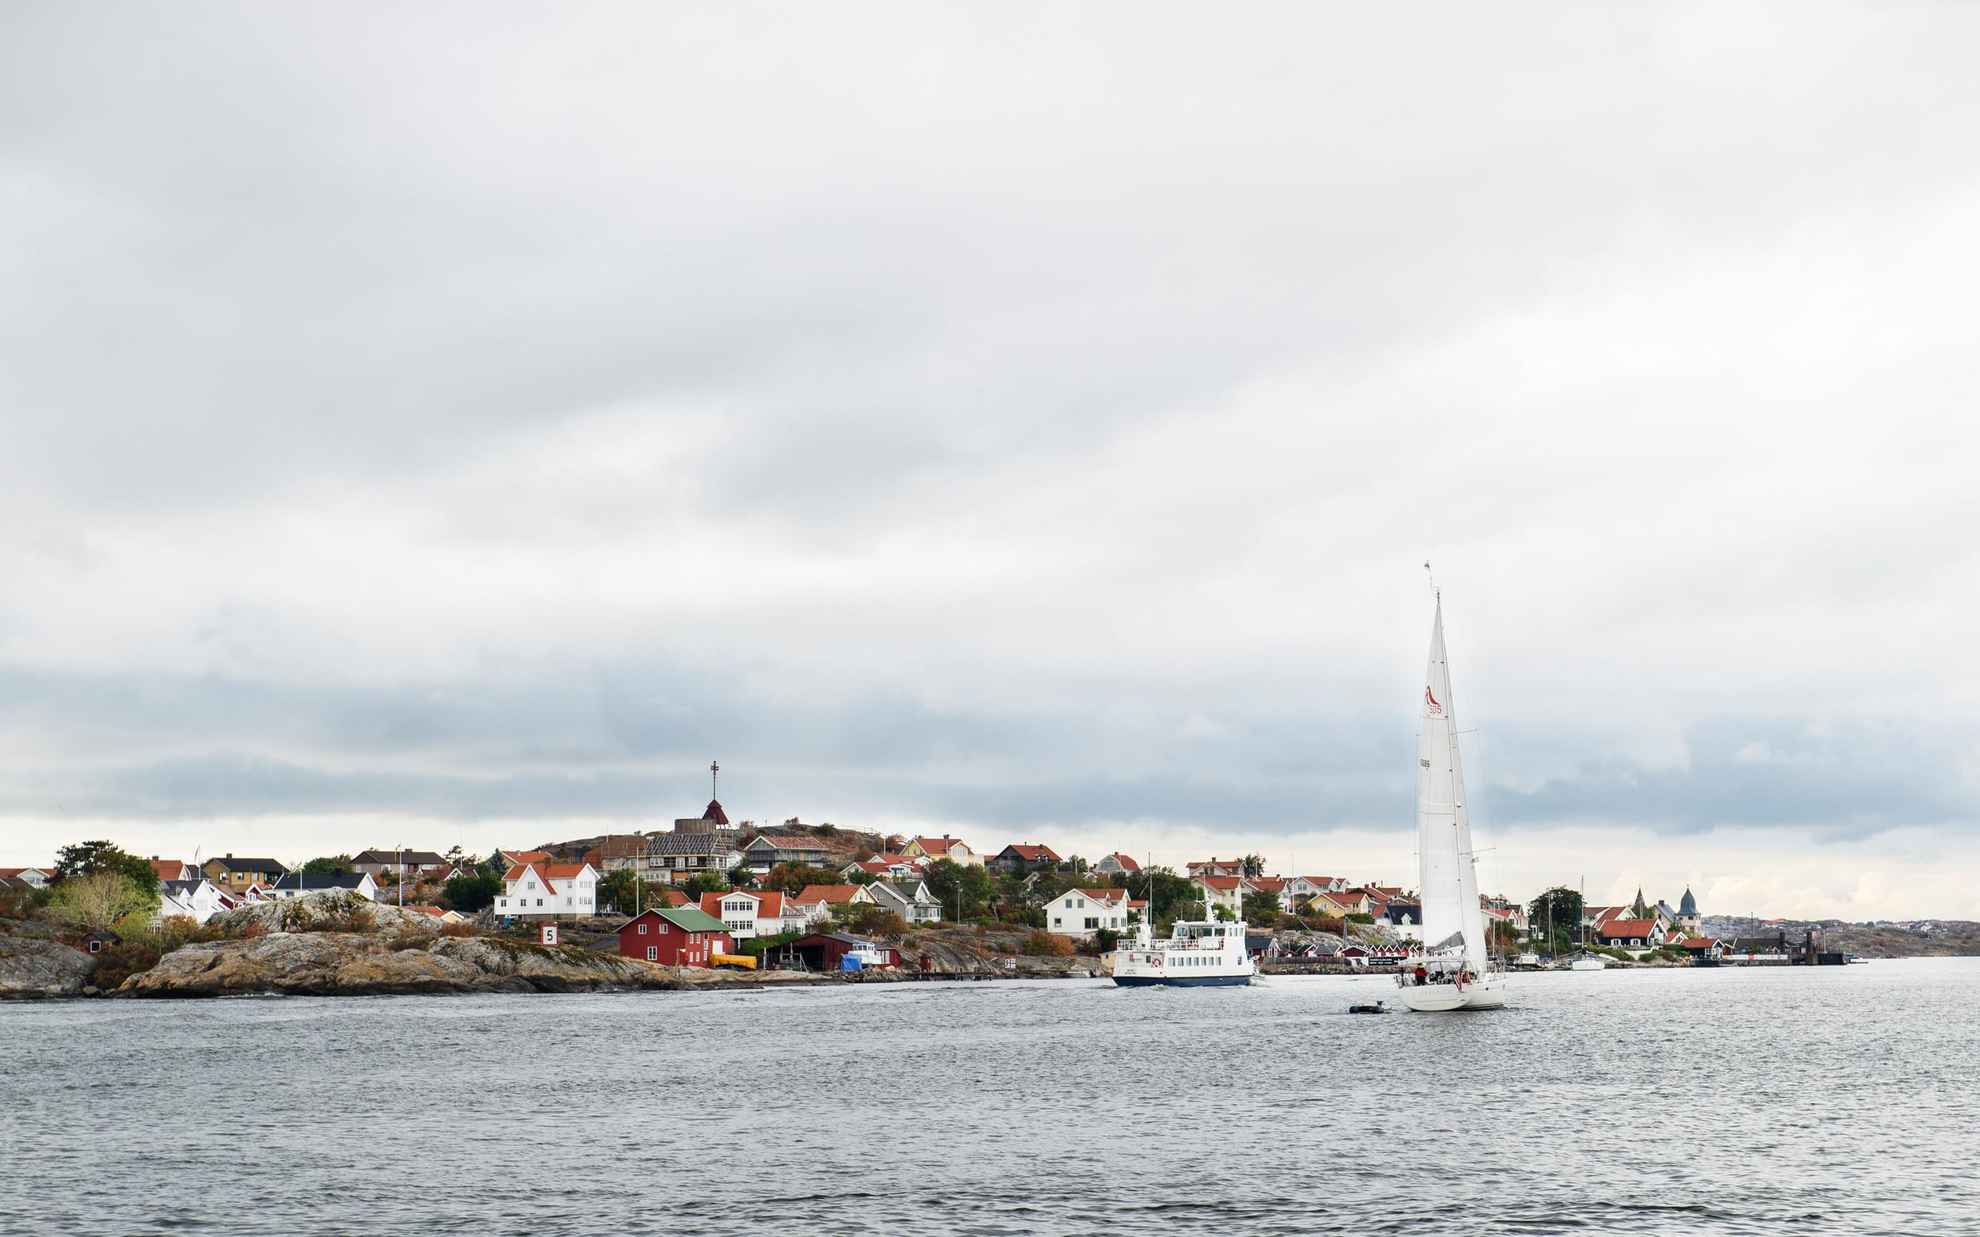 Een kleine veerboot en zeilboot in de zee, langs een eiland met veel huizen buiten Göteborg.